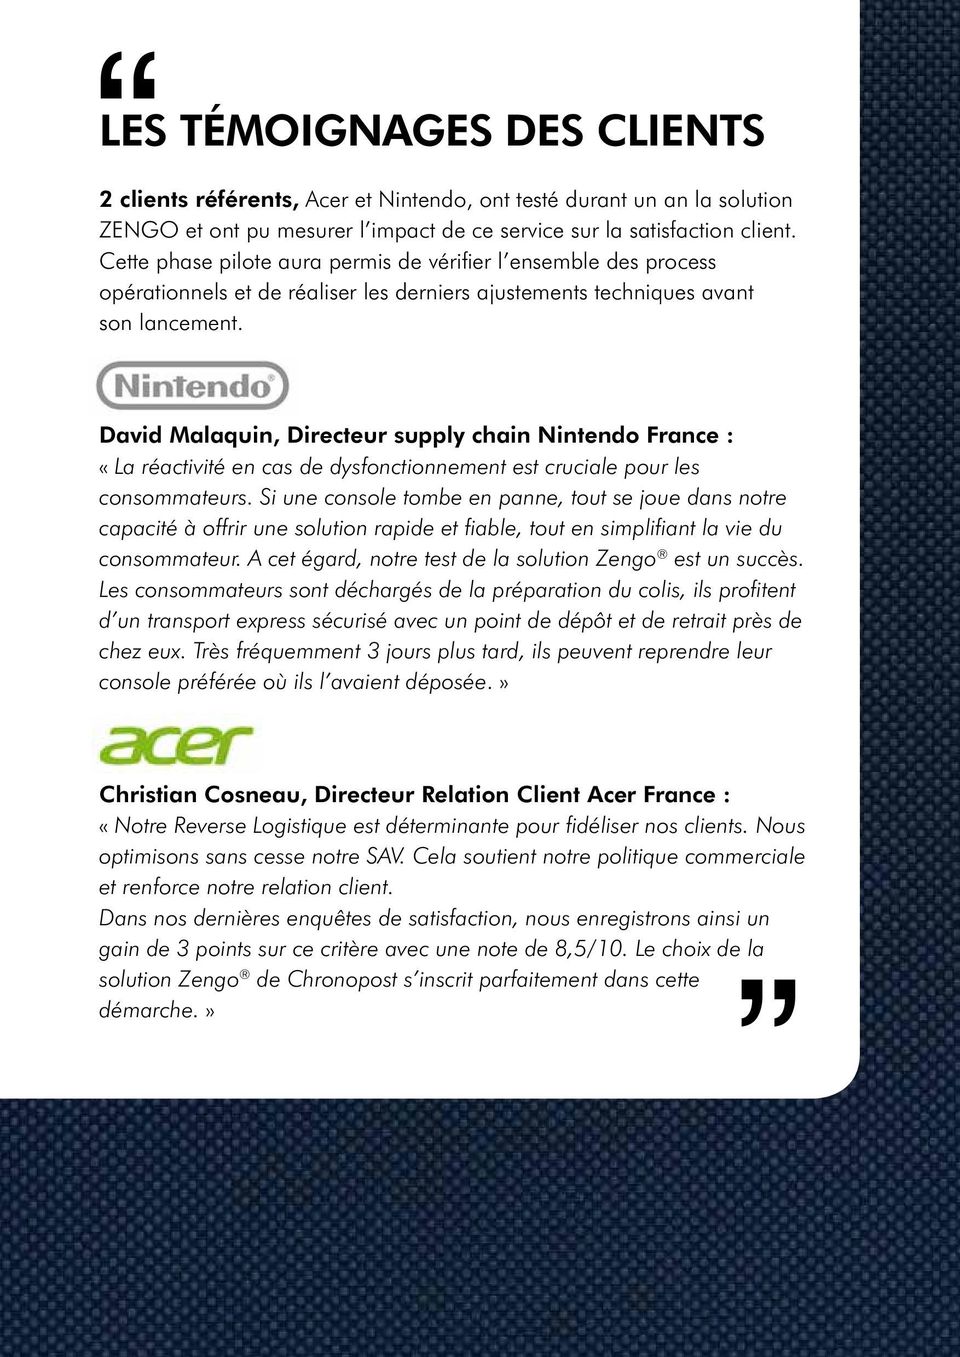 David Malaquin, Directeur supply chain Nintendo France : «La réactivité en cas de dysfonctionnement est cruciale pour les consommateurs.